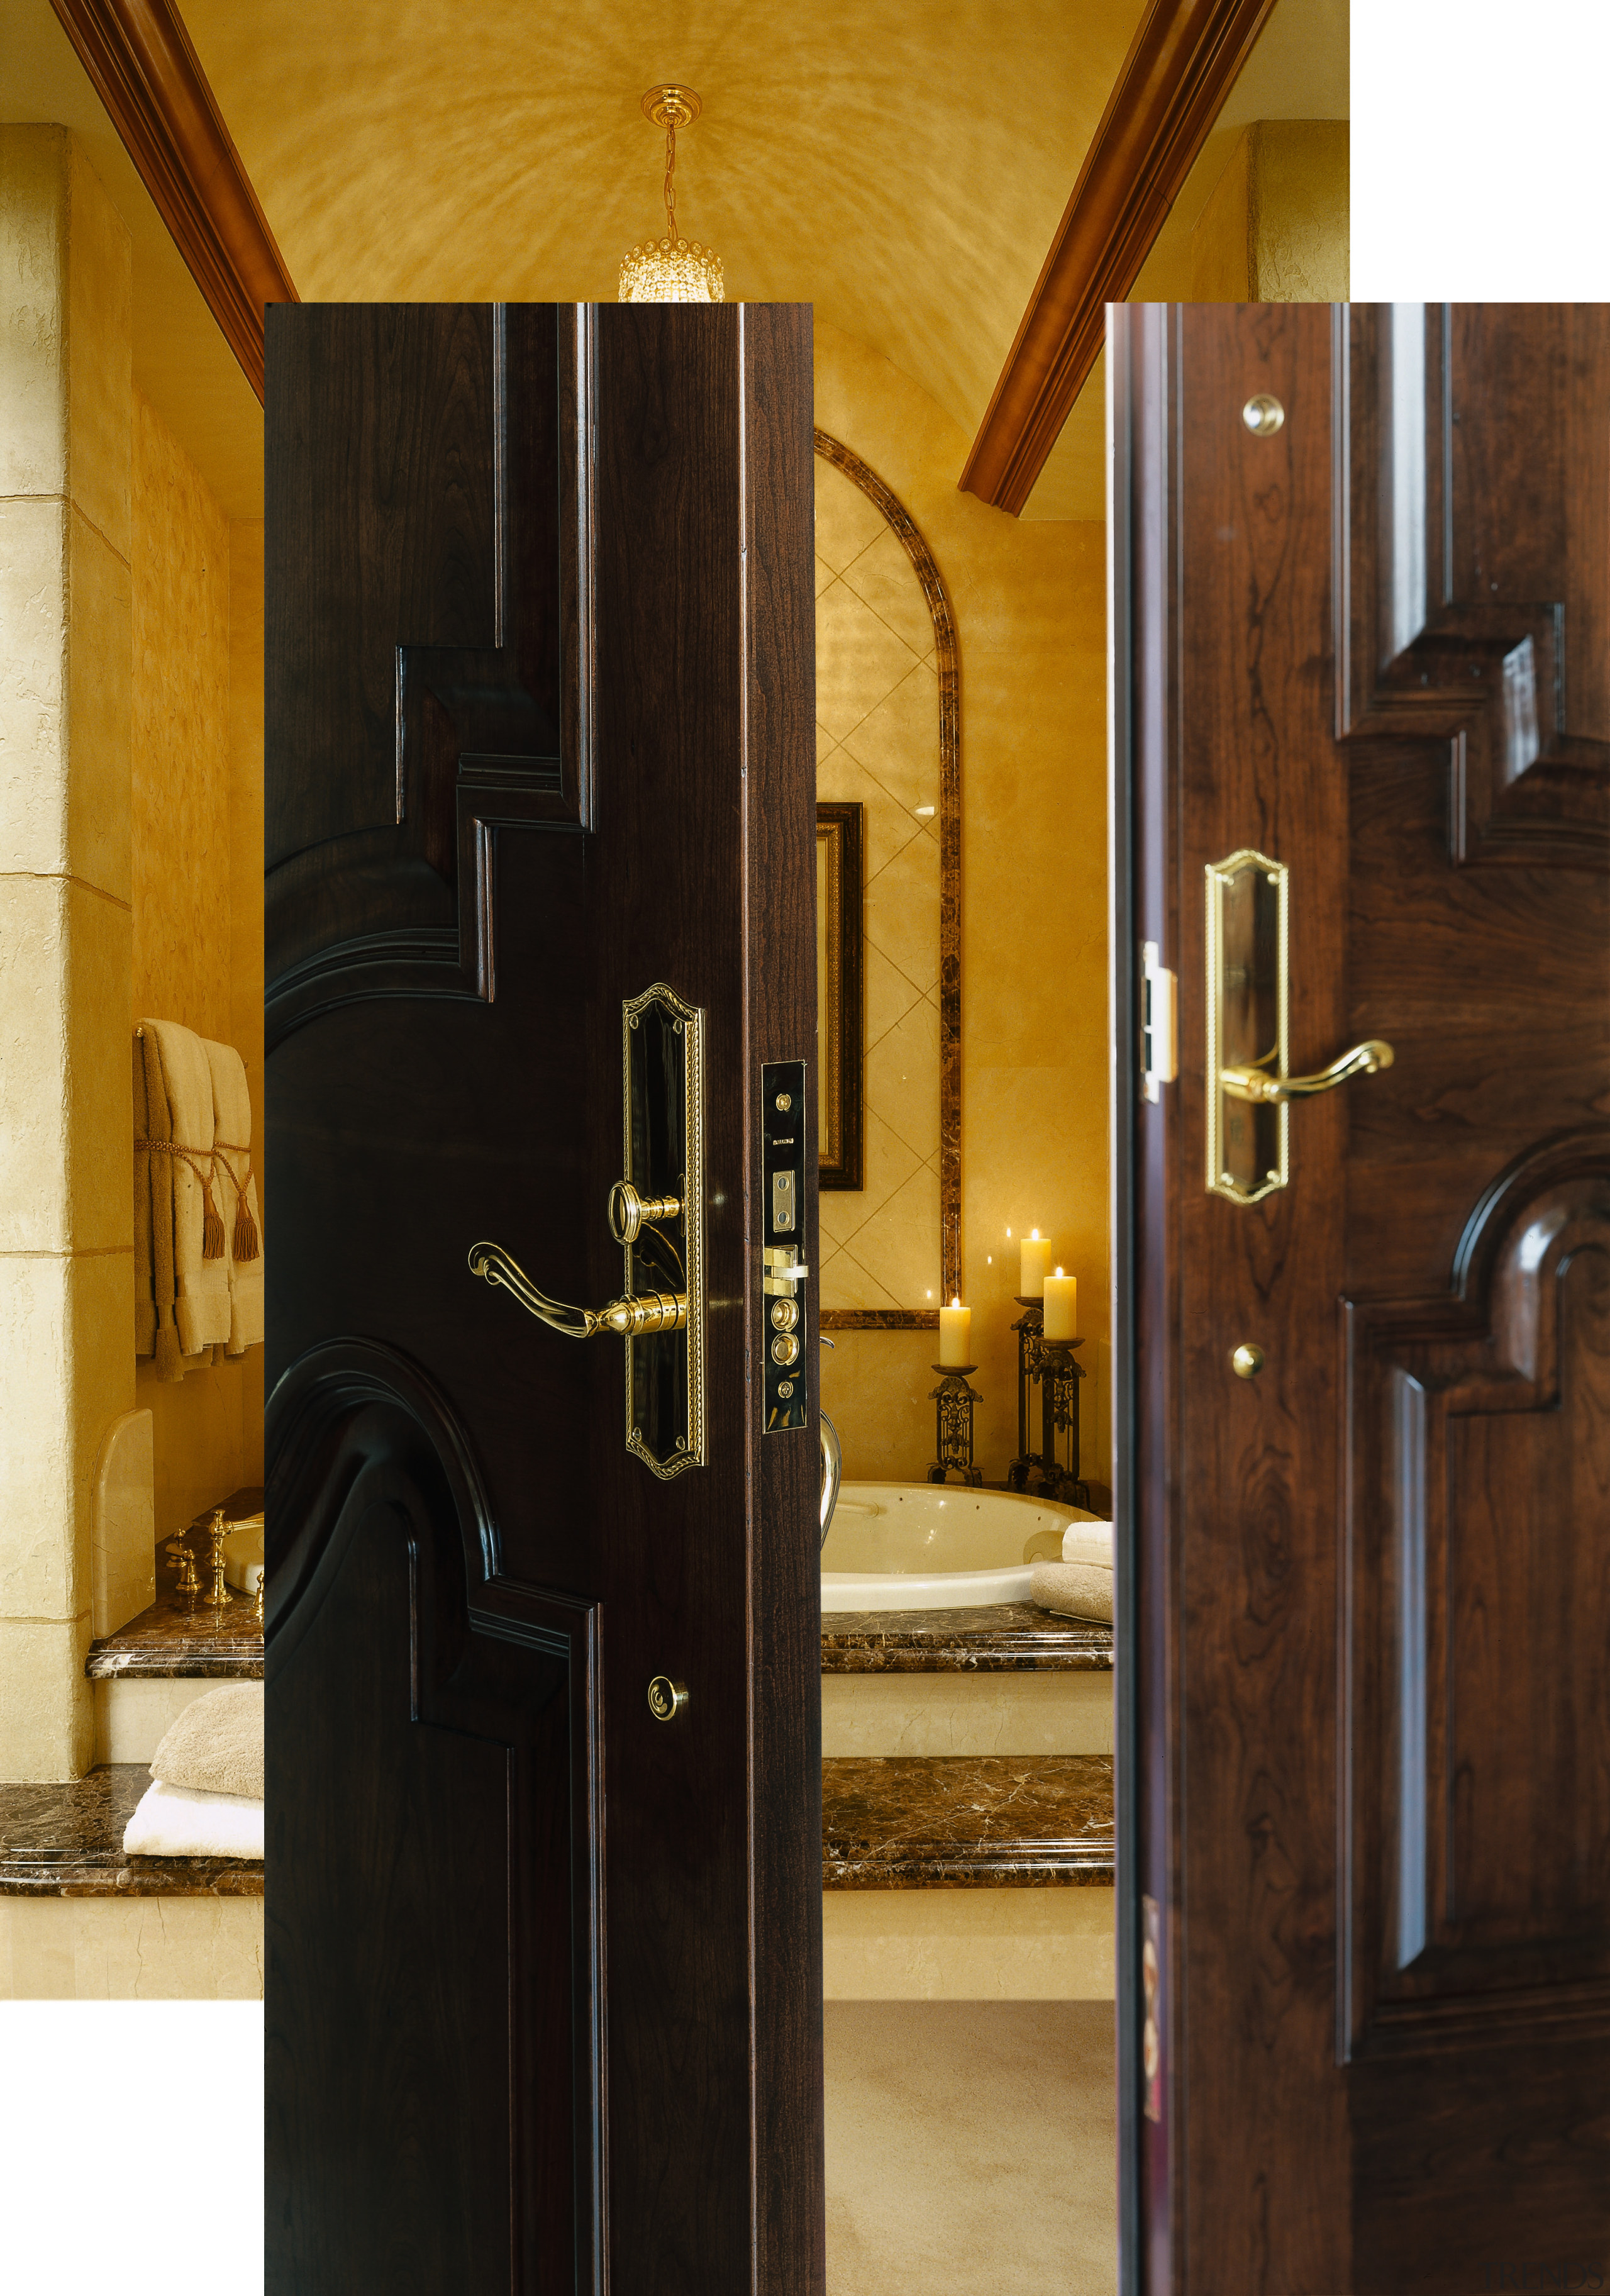 A view of two wooden doors with gold door, interior design, wood, black